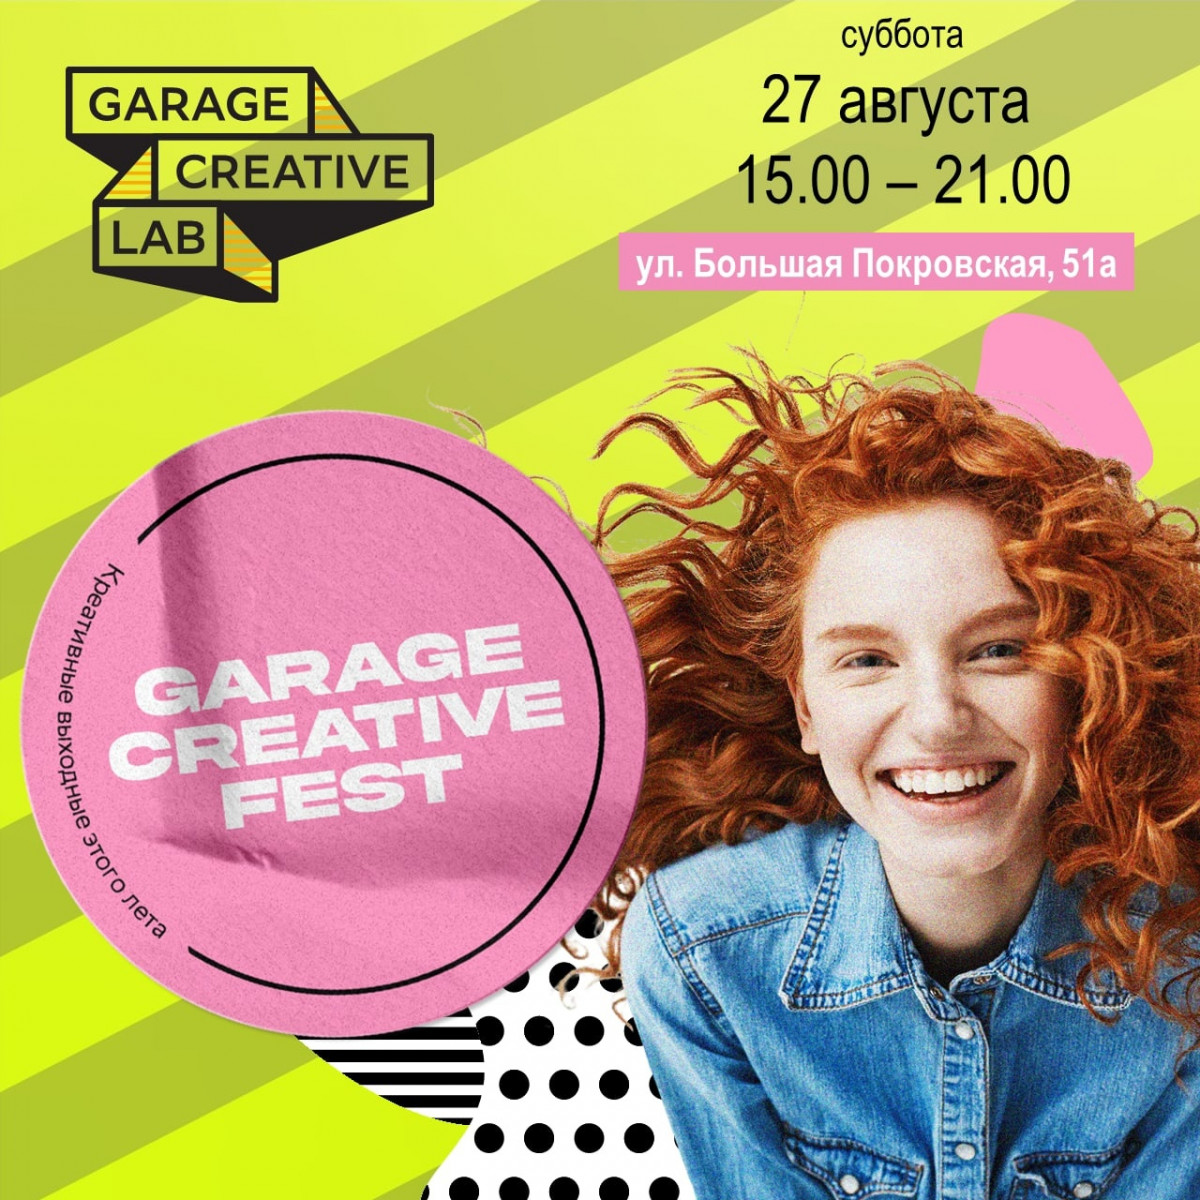 27 августа на Большой Покровской пройдет фестиваль GARAGE CREATIVE FEST